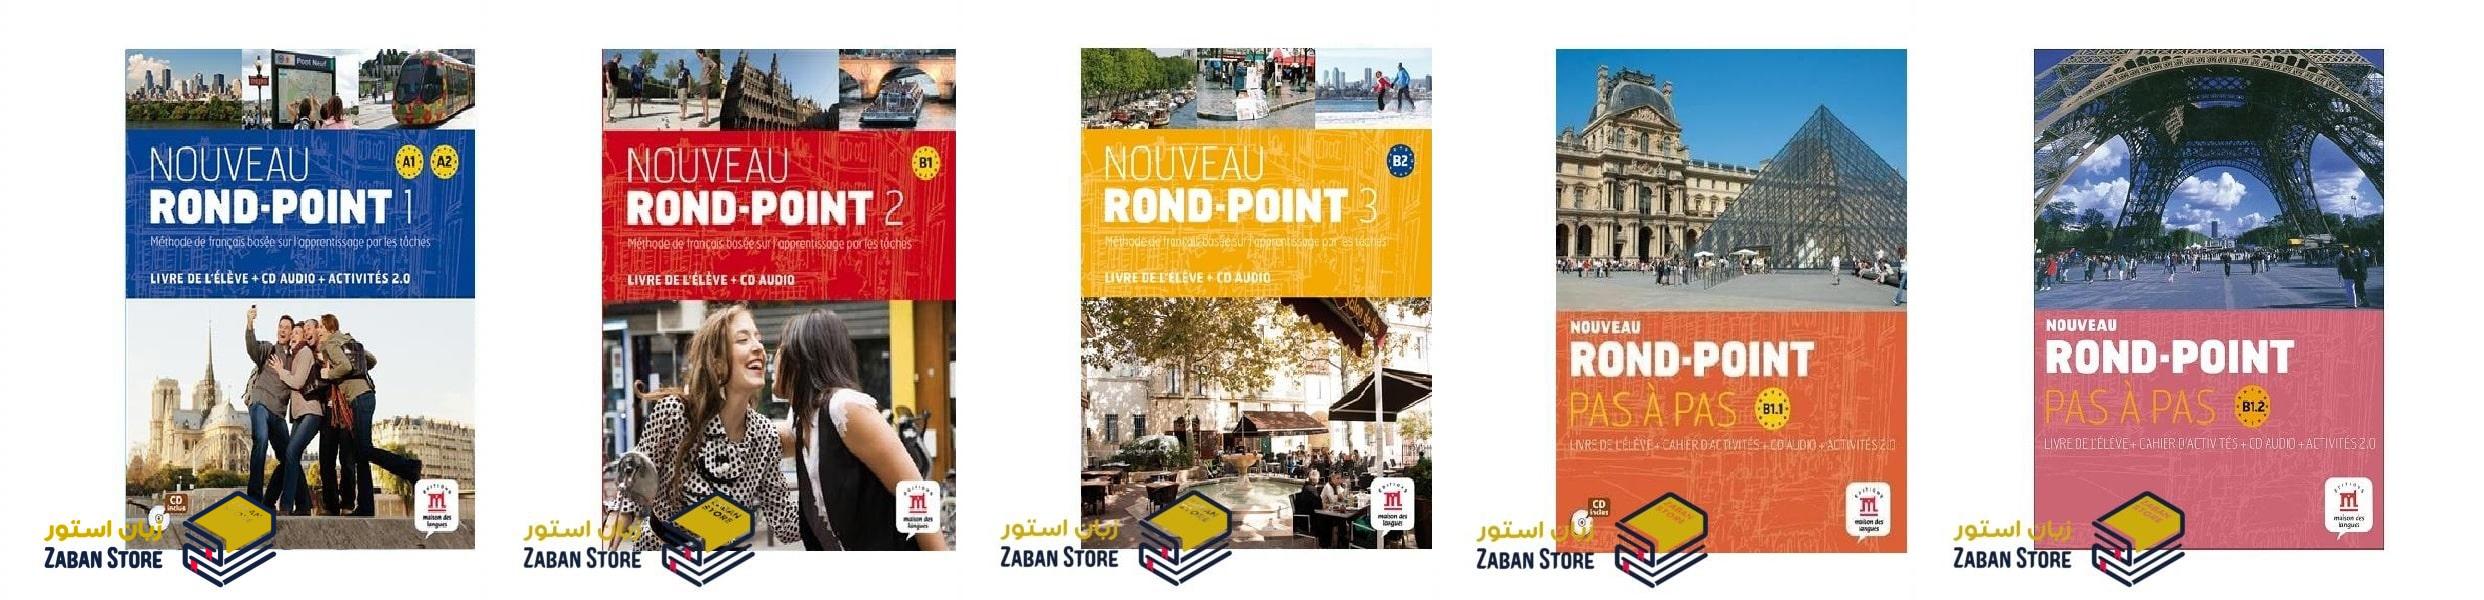 خرید کتاب زبان فرانسوی | فروشگاه اینترنتی کتاب زبان فرانسوی | Nouveau Rond Point | روند پوینت